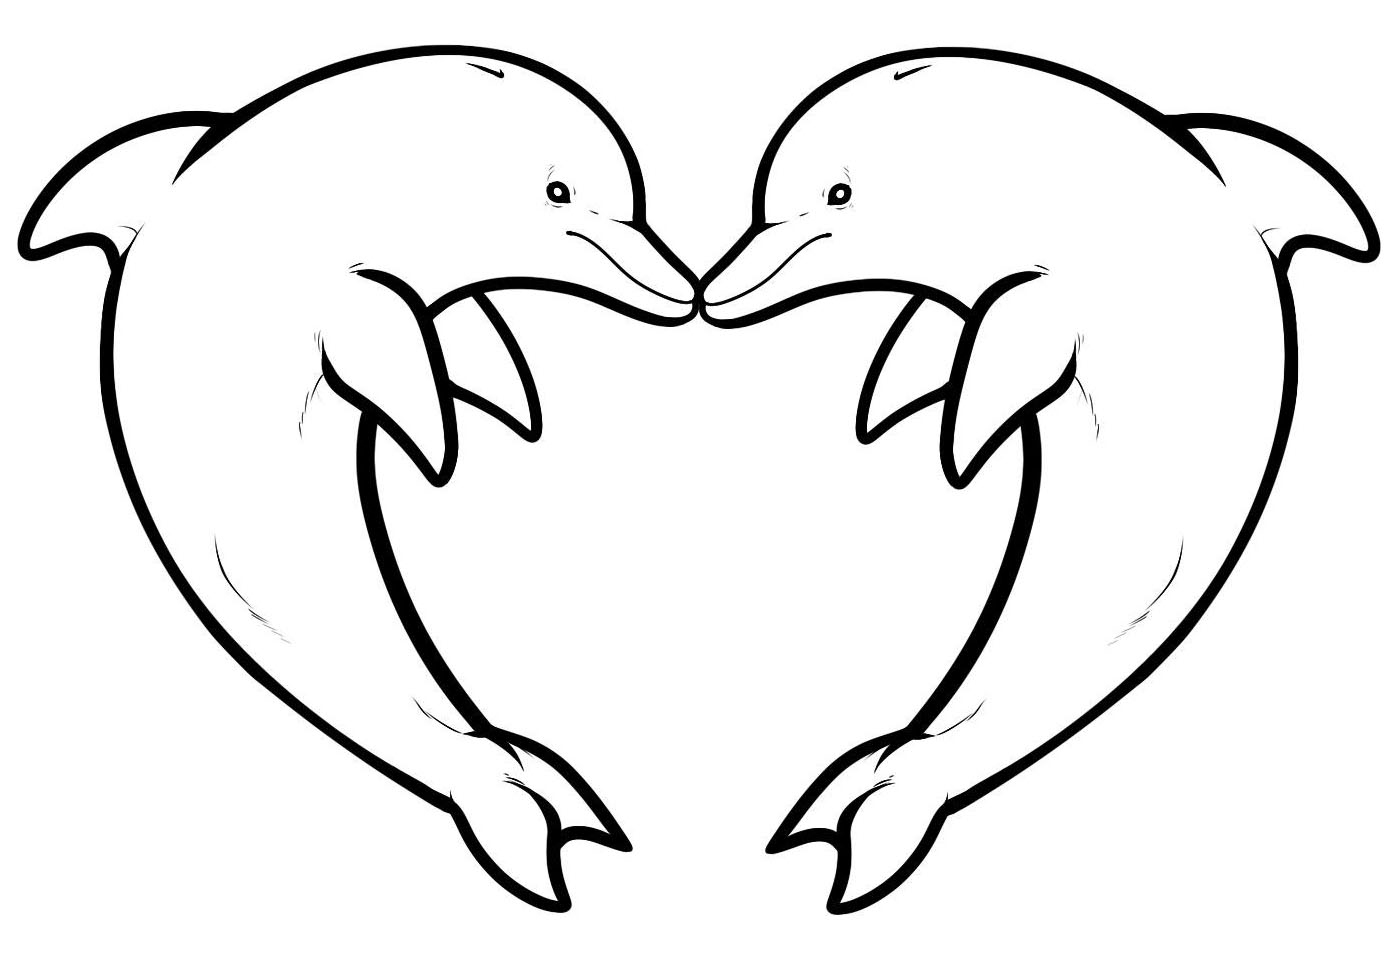 Tranh tô màu hai chú cá heo tạo hình trái tim